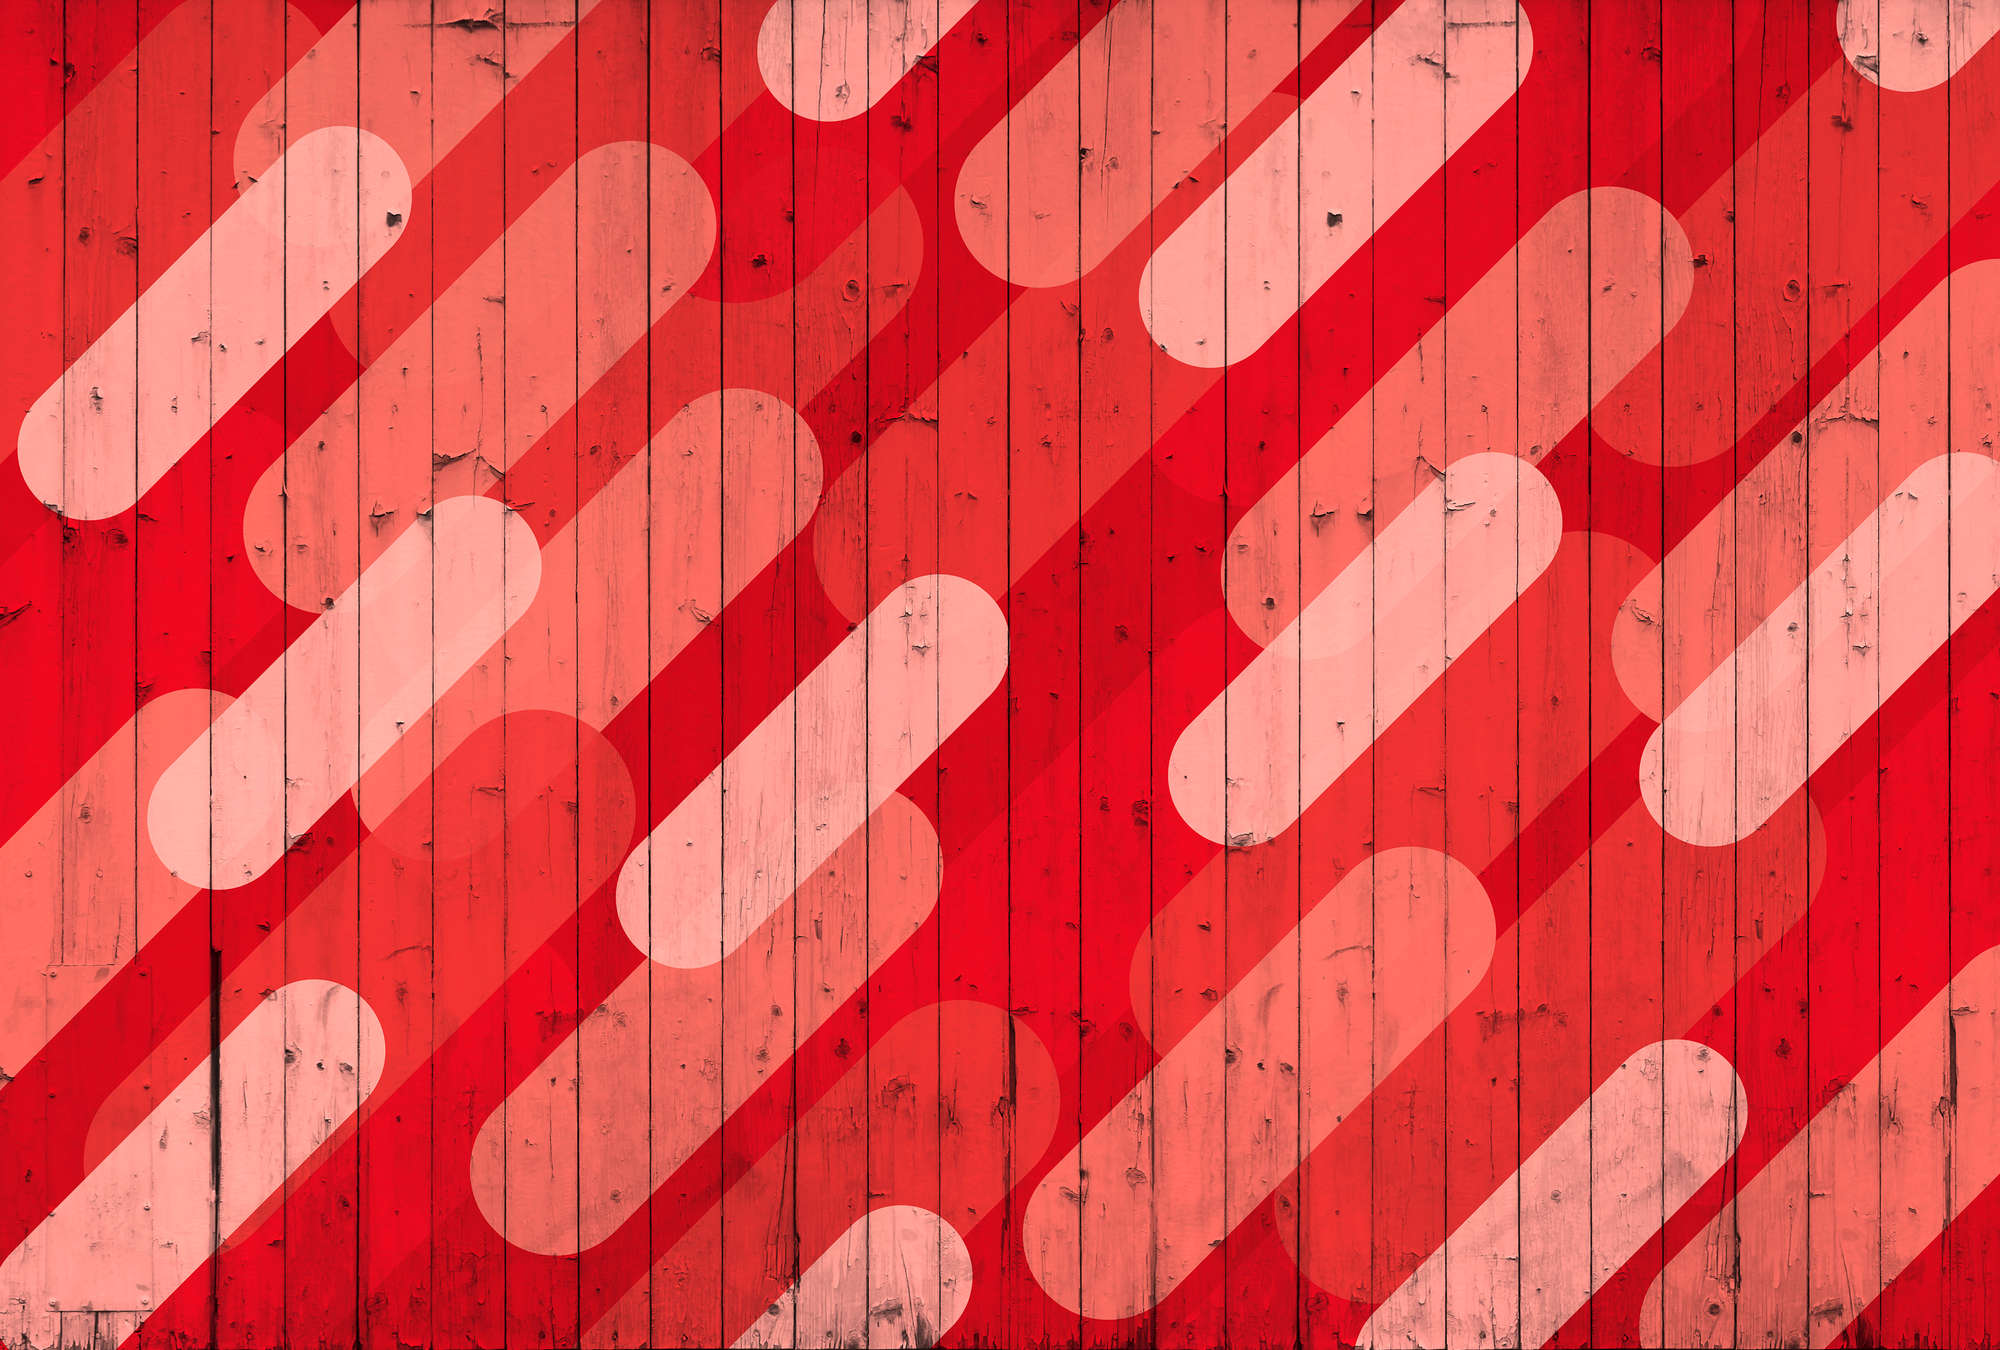             Papel Pintado con Diseño de Tablas y Rayas - Rojo, Rosa, Crema
        